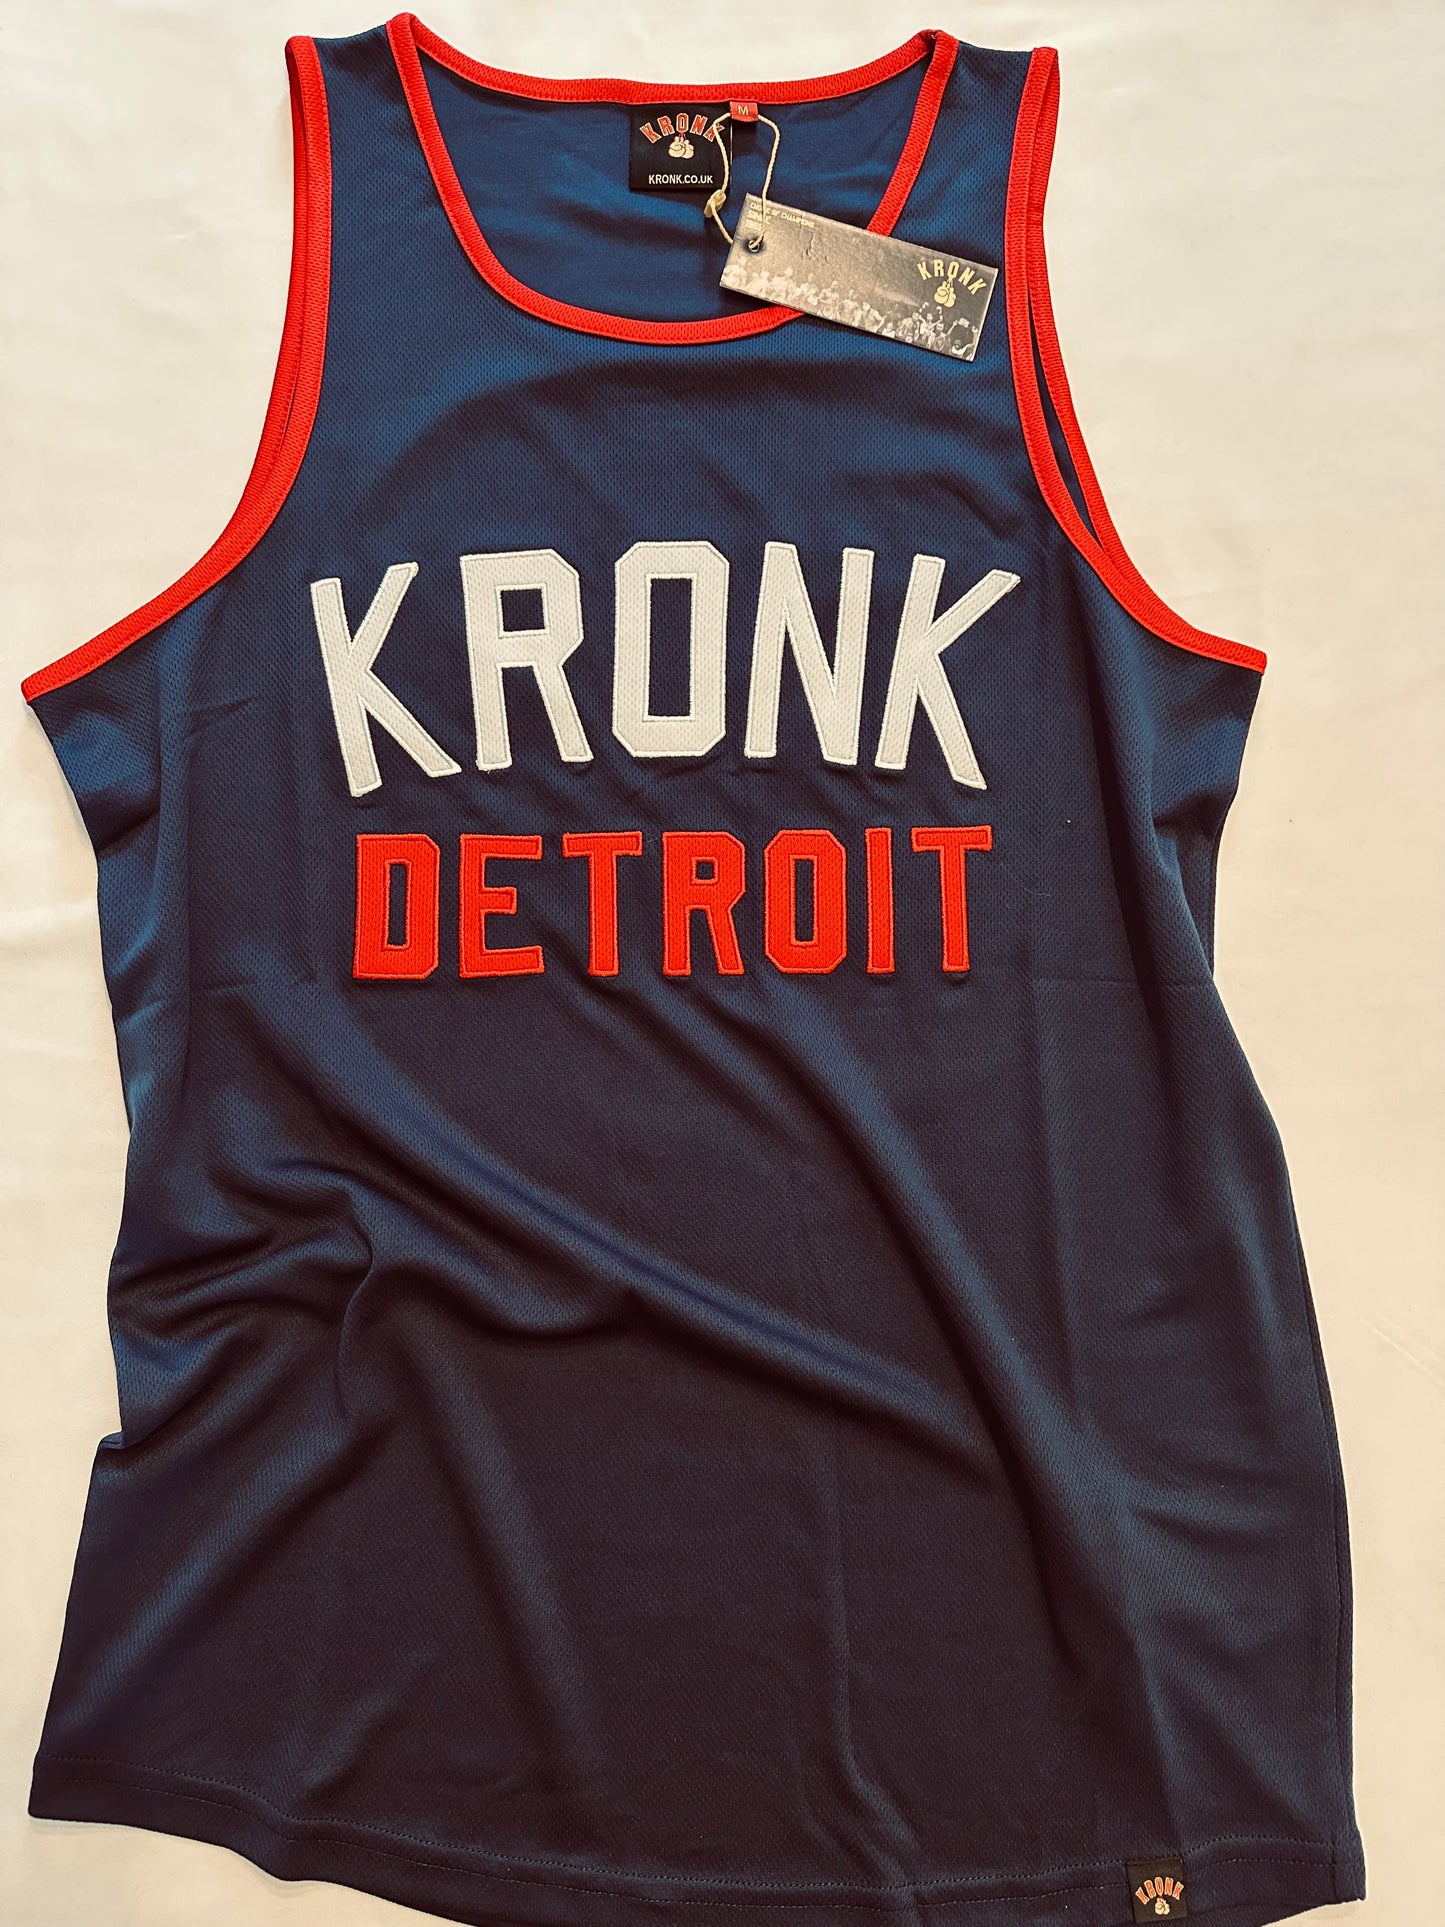 KRONK Iconic Detroit Applique Training Gym Vest Navy